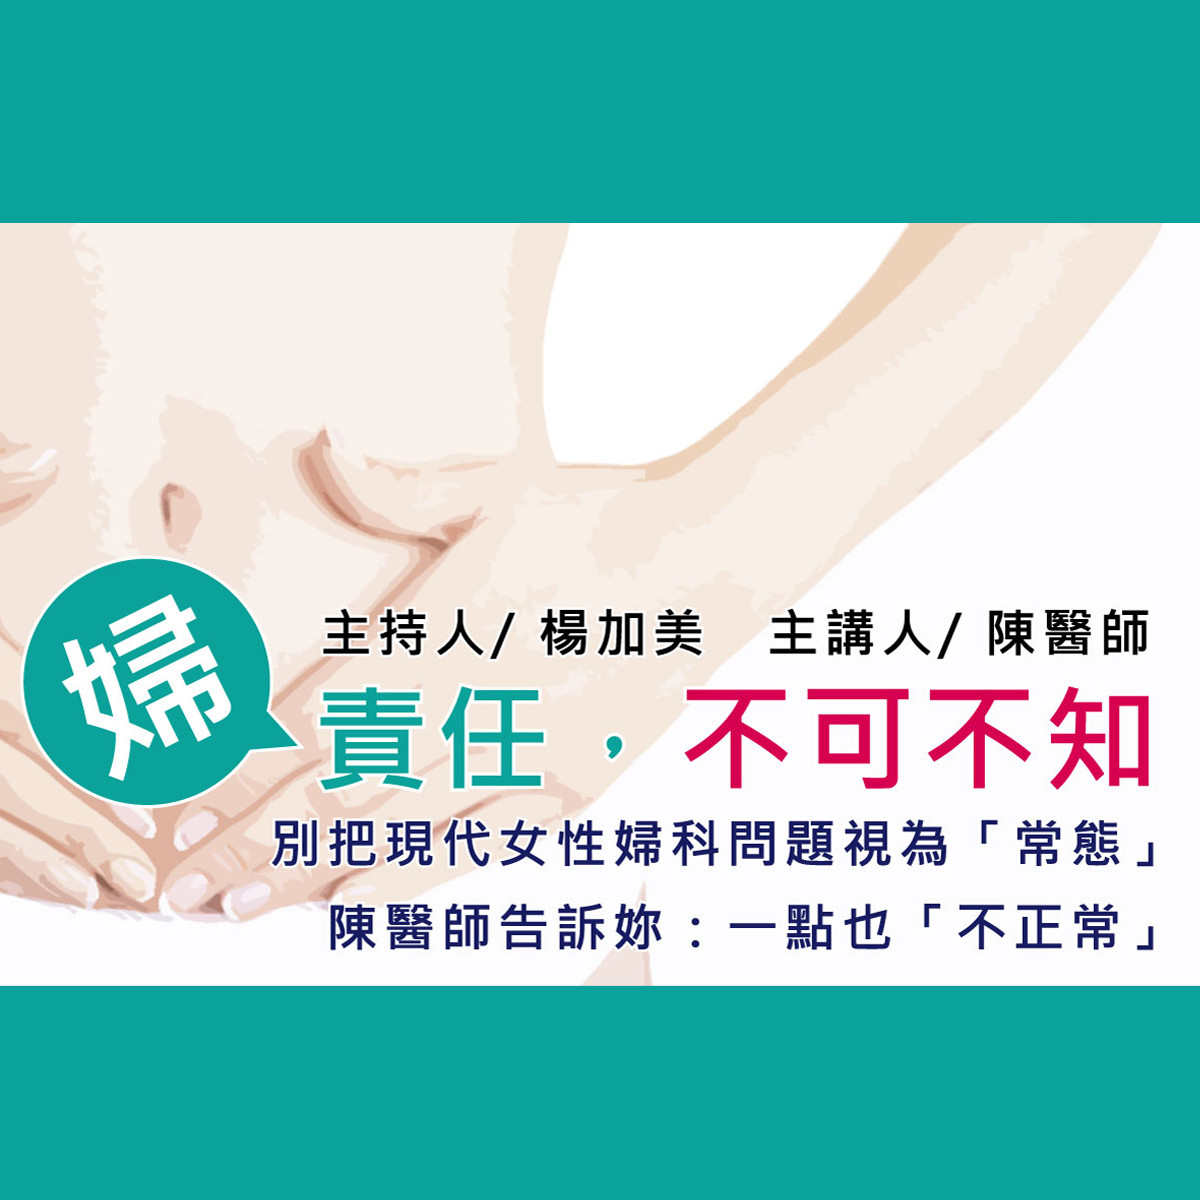 【祝你健康】婦產科 - 6.產檢重要檢查封面圖